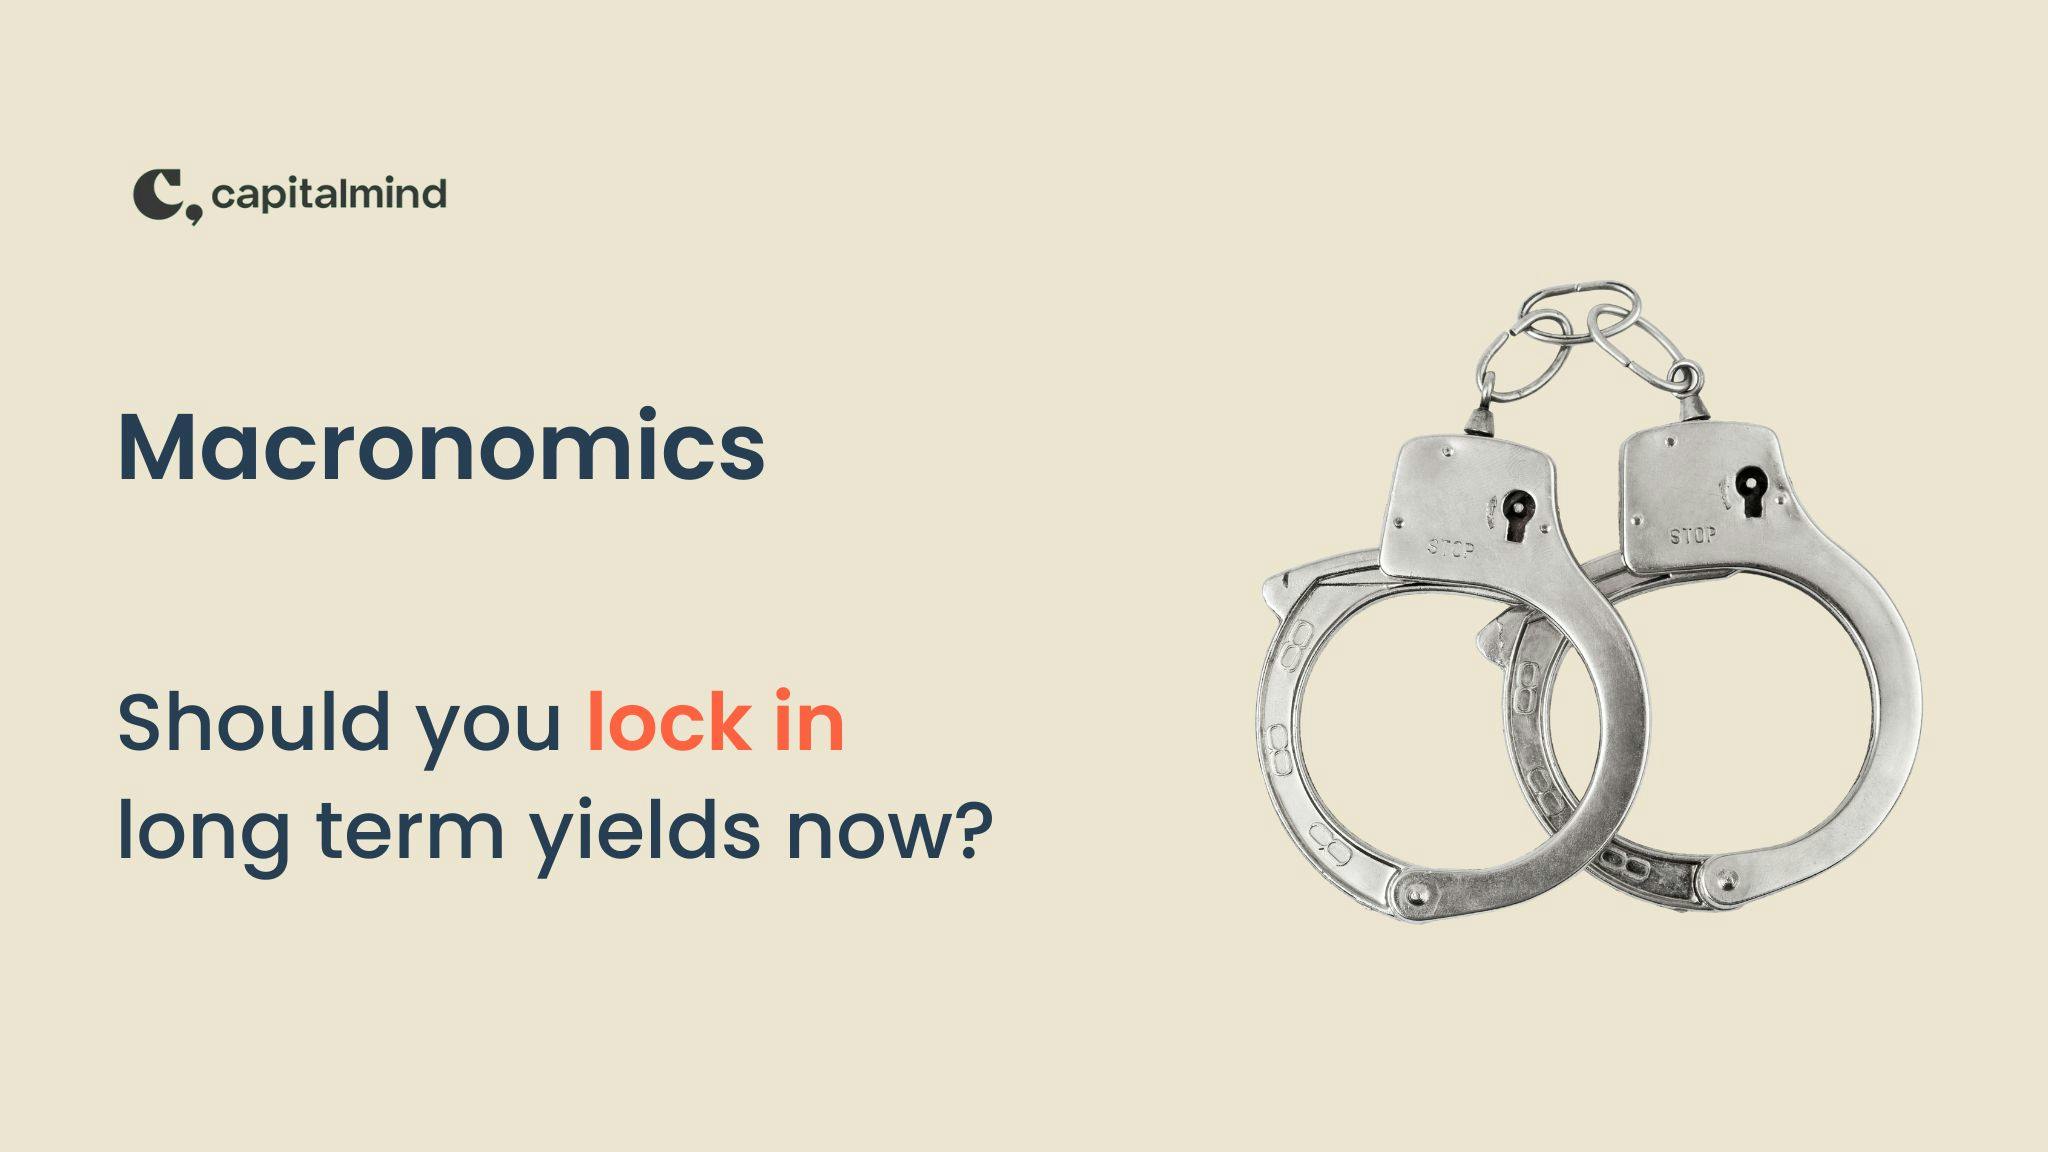 Macronomics: Should you lock in long term yields now?